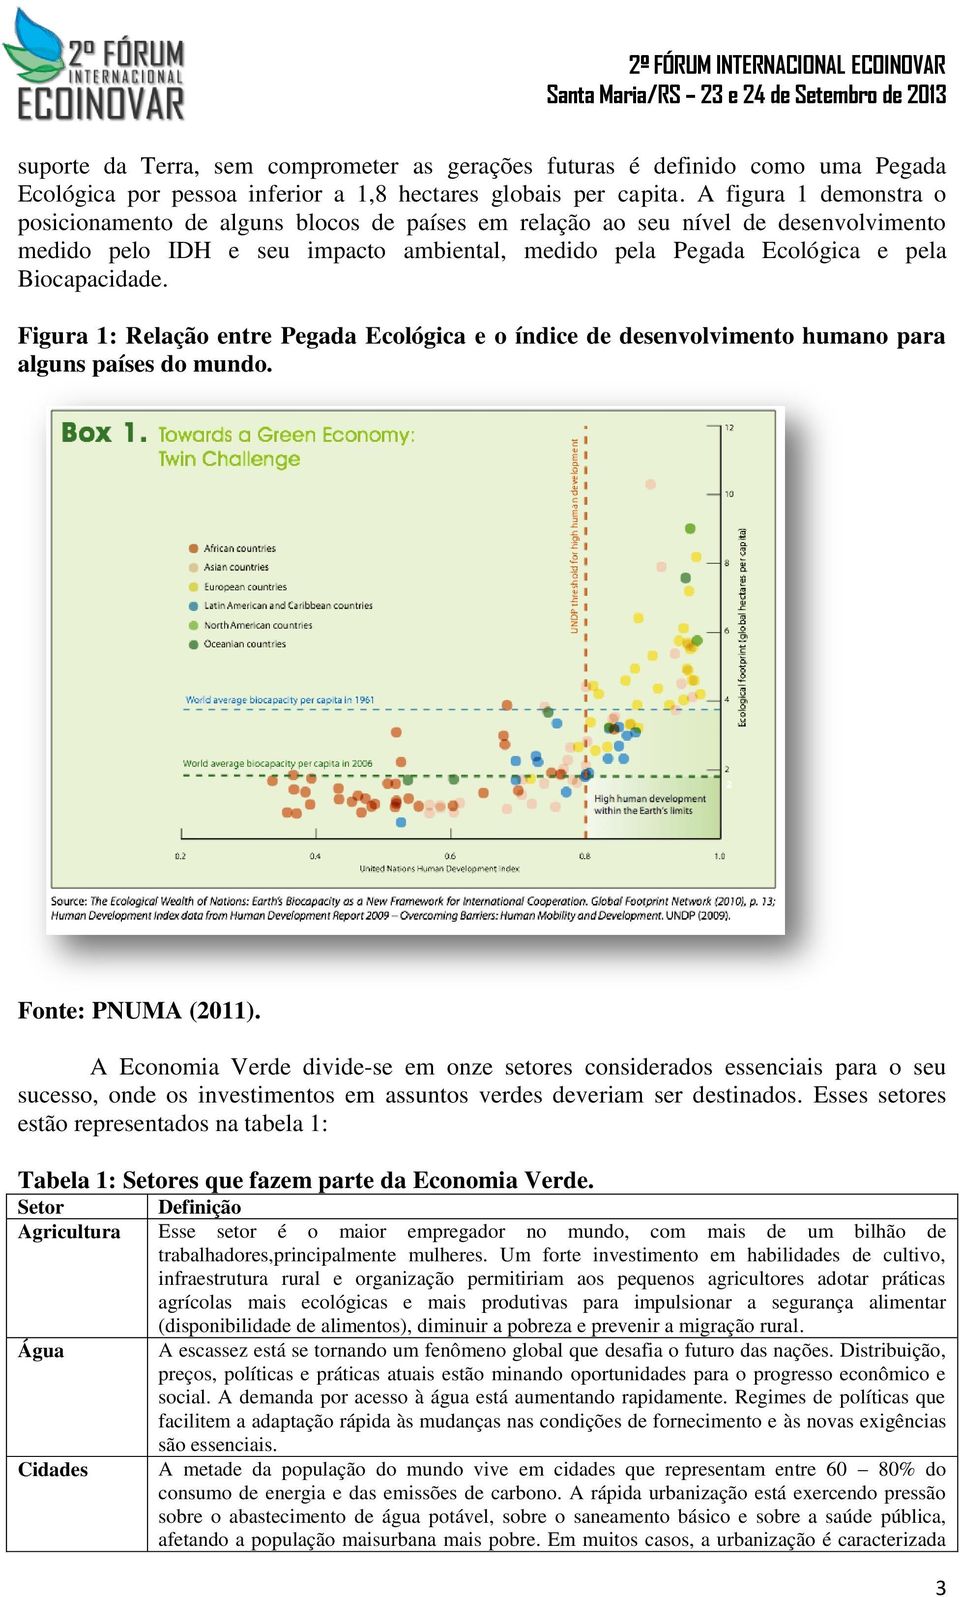 Figura 1: Relação entre Pegada Ecológica e o índice de desenvolvimento humano para alguns países do mundo. Fonte: PNUMA (2011).